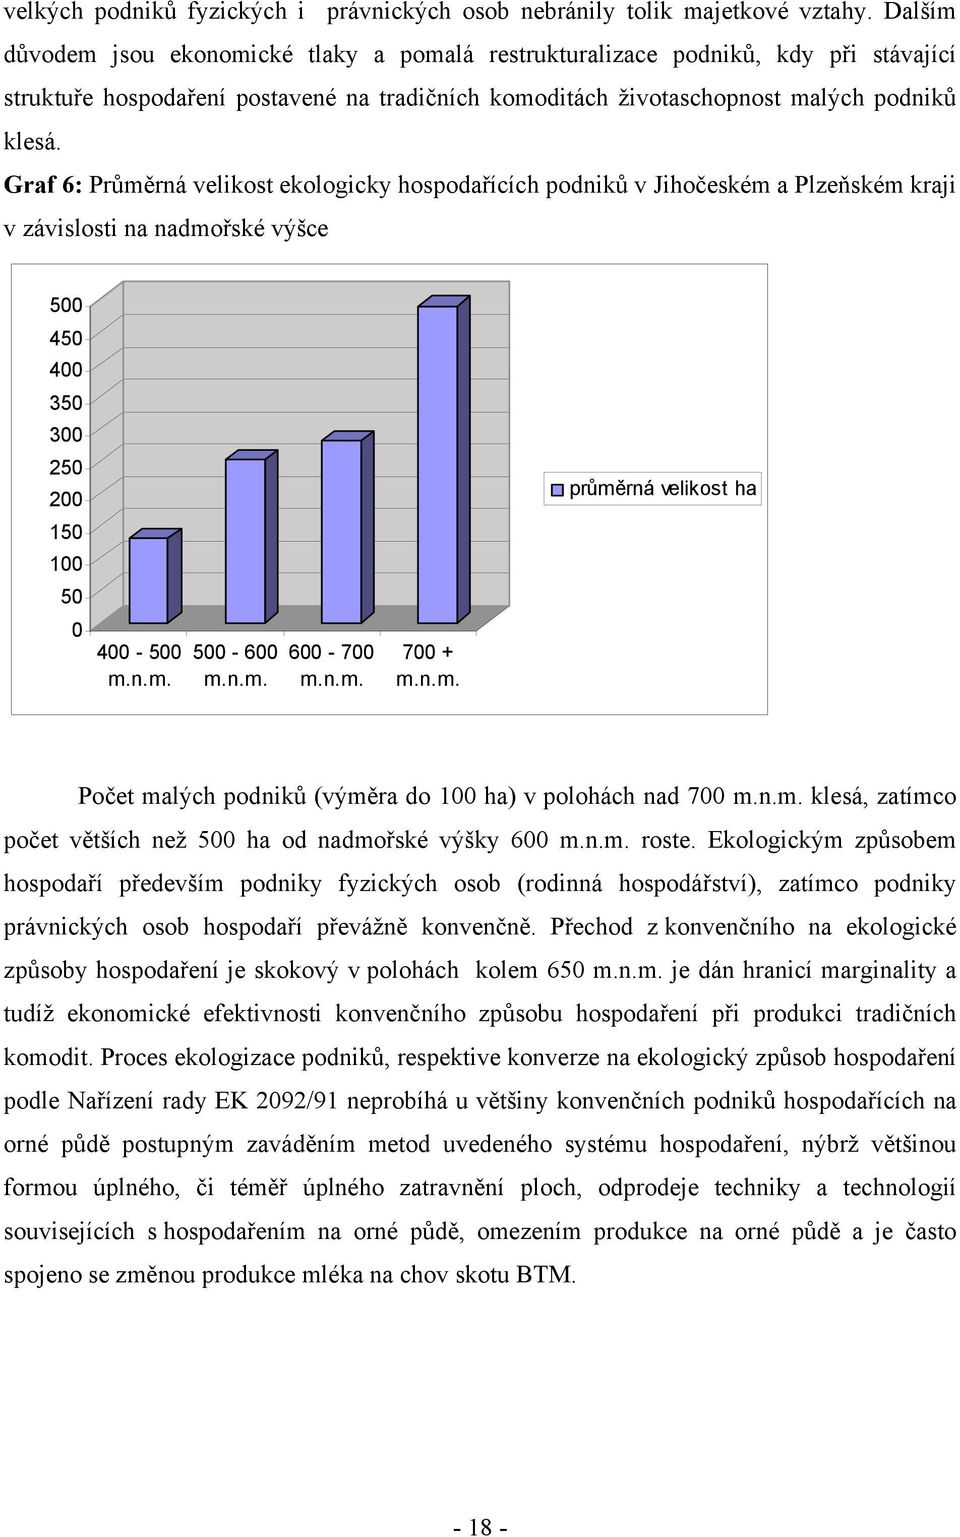 Graf 6: Průměrná velikost ekologicky hospodařících podniků v Jihočeském a Plzeňském kraji v závislosti na nadmořské výšce 500 450 400 350 300 250 200 průměrná velikost ha 150 100 50 0 400-500 500-600